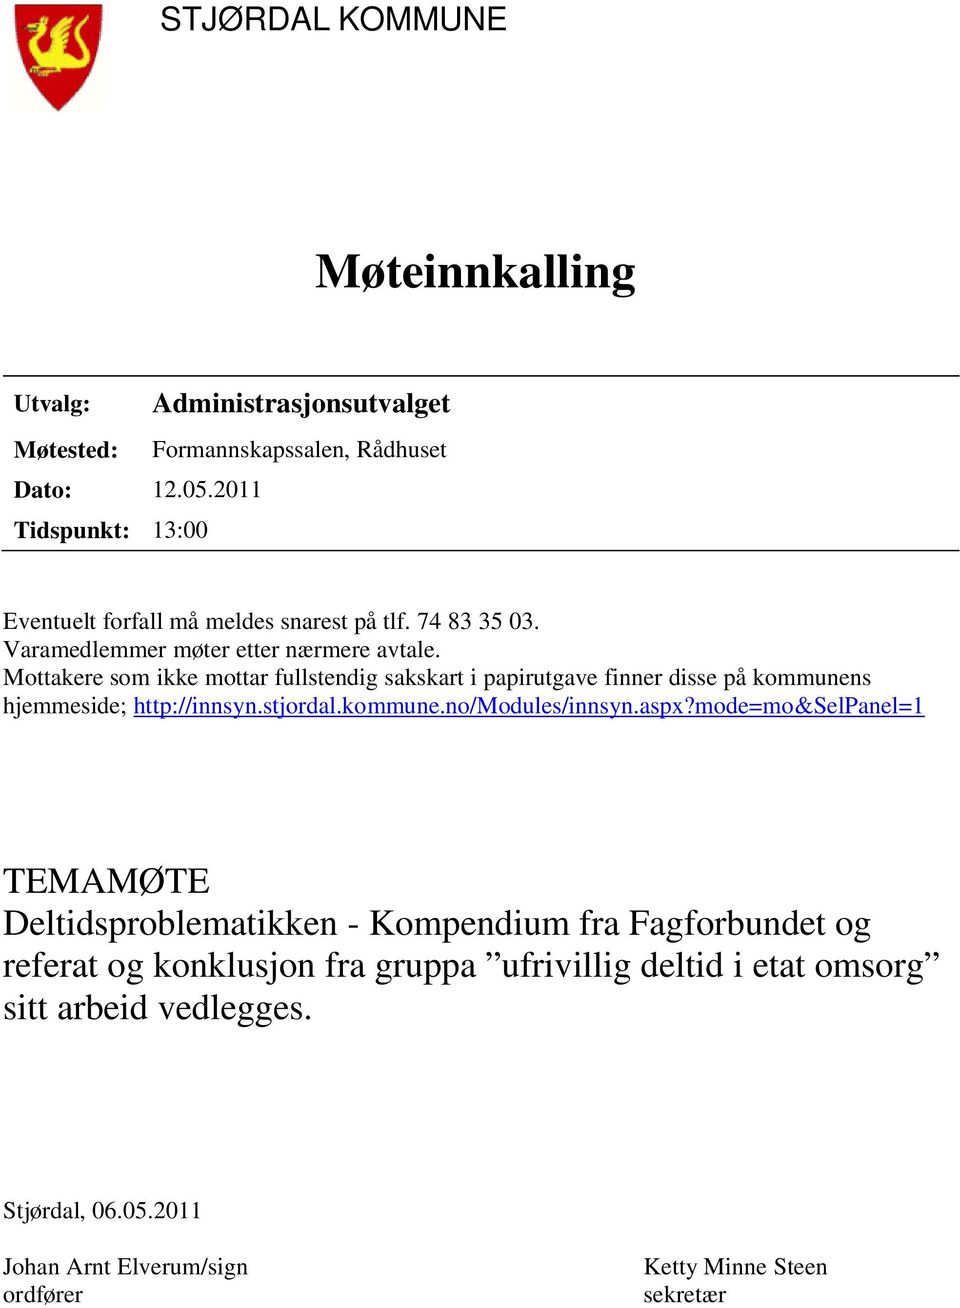 Mottakere som ikke mottar fullstendig sakskart i papirutgave finner disse på kommunens hjemmeside; http://innsyn.stjordal.kommune.no/modules/innsyn.aspx?